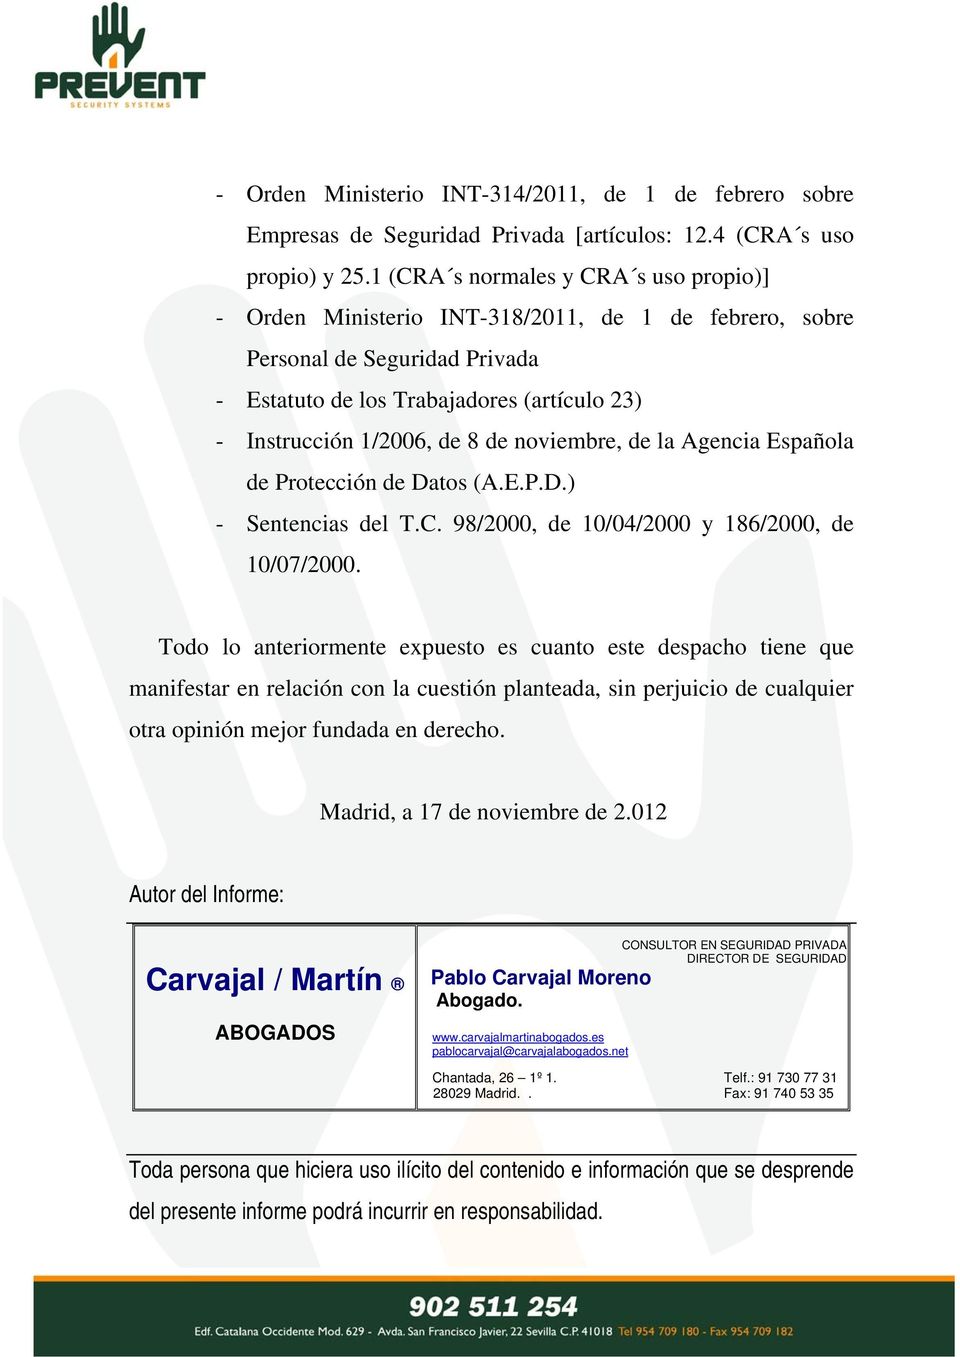 noviembre, de la Agencia Española de Protección de Datos (A.E.P.D.) - Sentencias del T.C. 98/2000, de 10/04/2000 y 186/2000, de 10/07/2000.